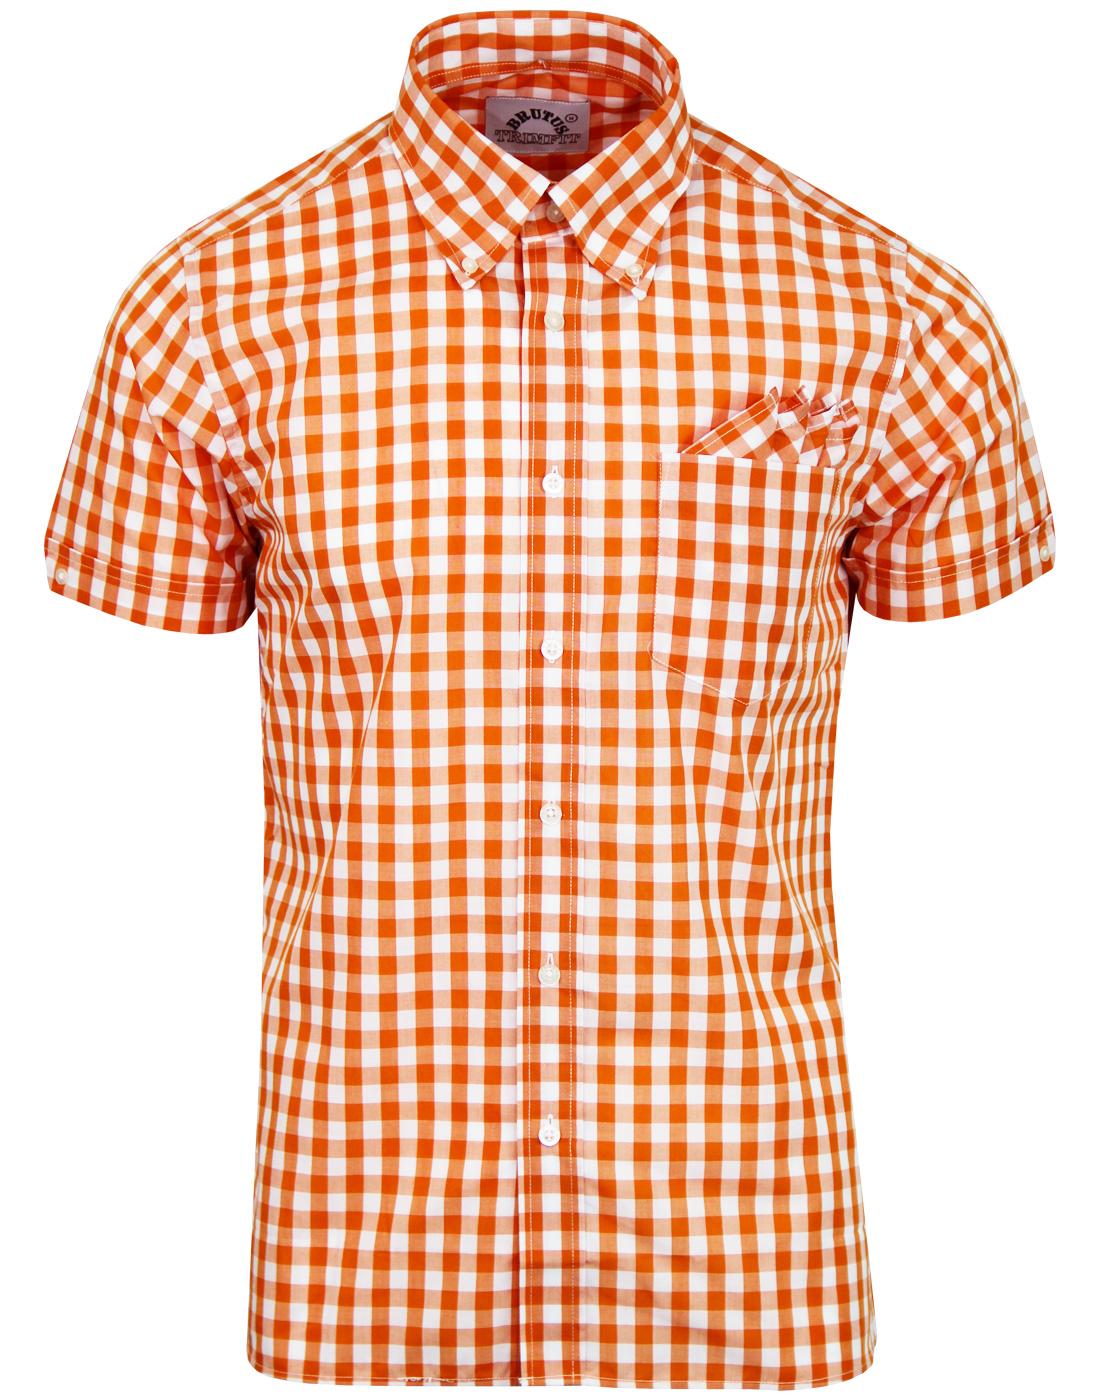 BRUTUS TRIMFIT Retro Mod Gingham Check Shirt in Orange